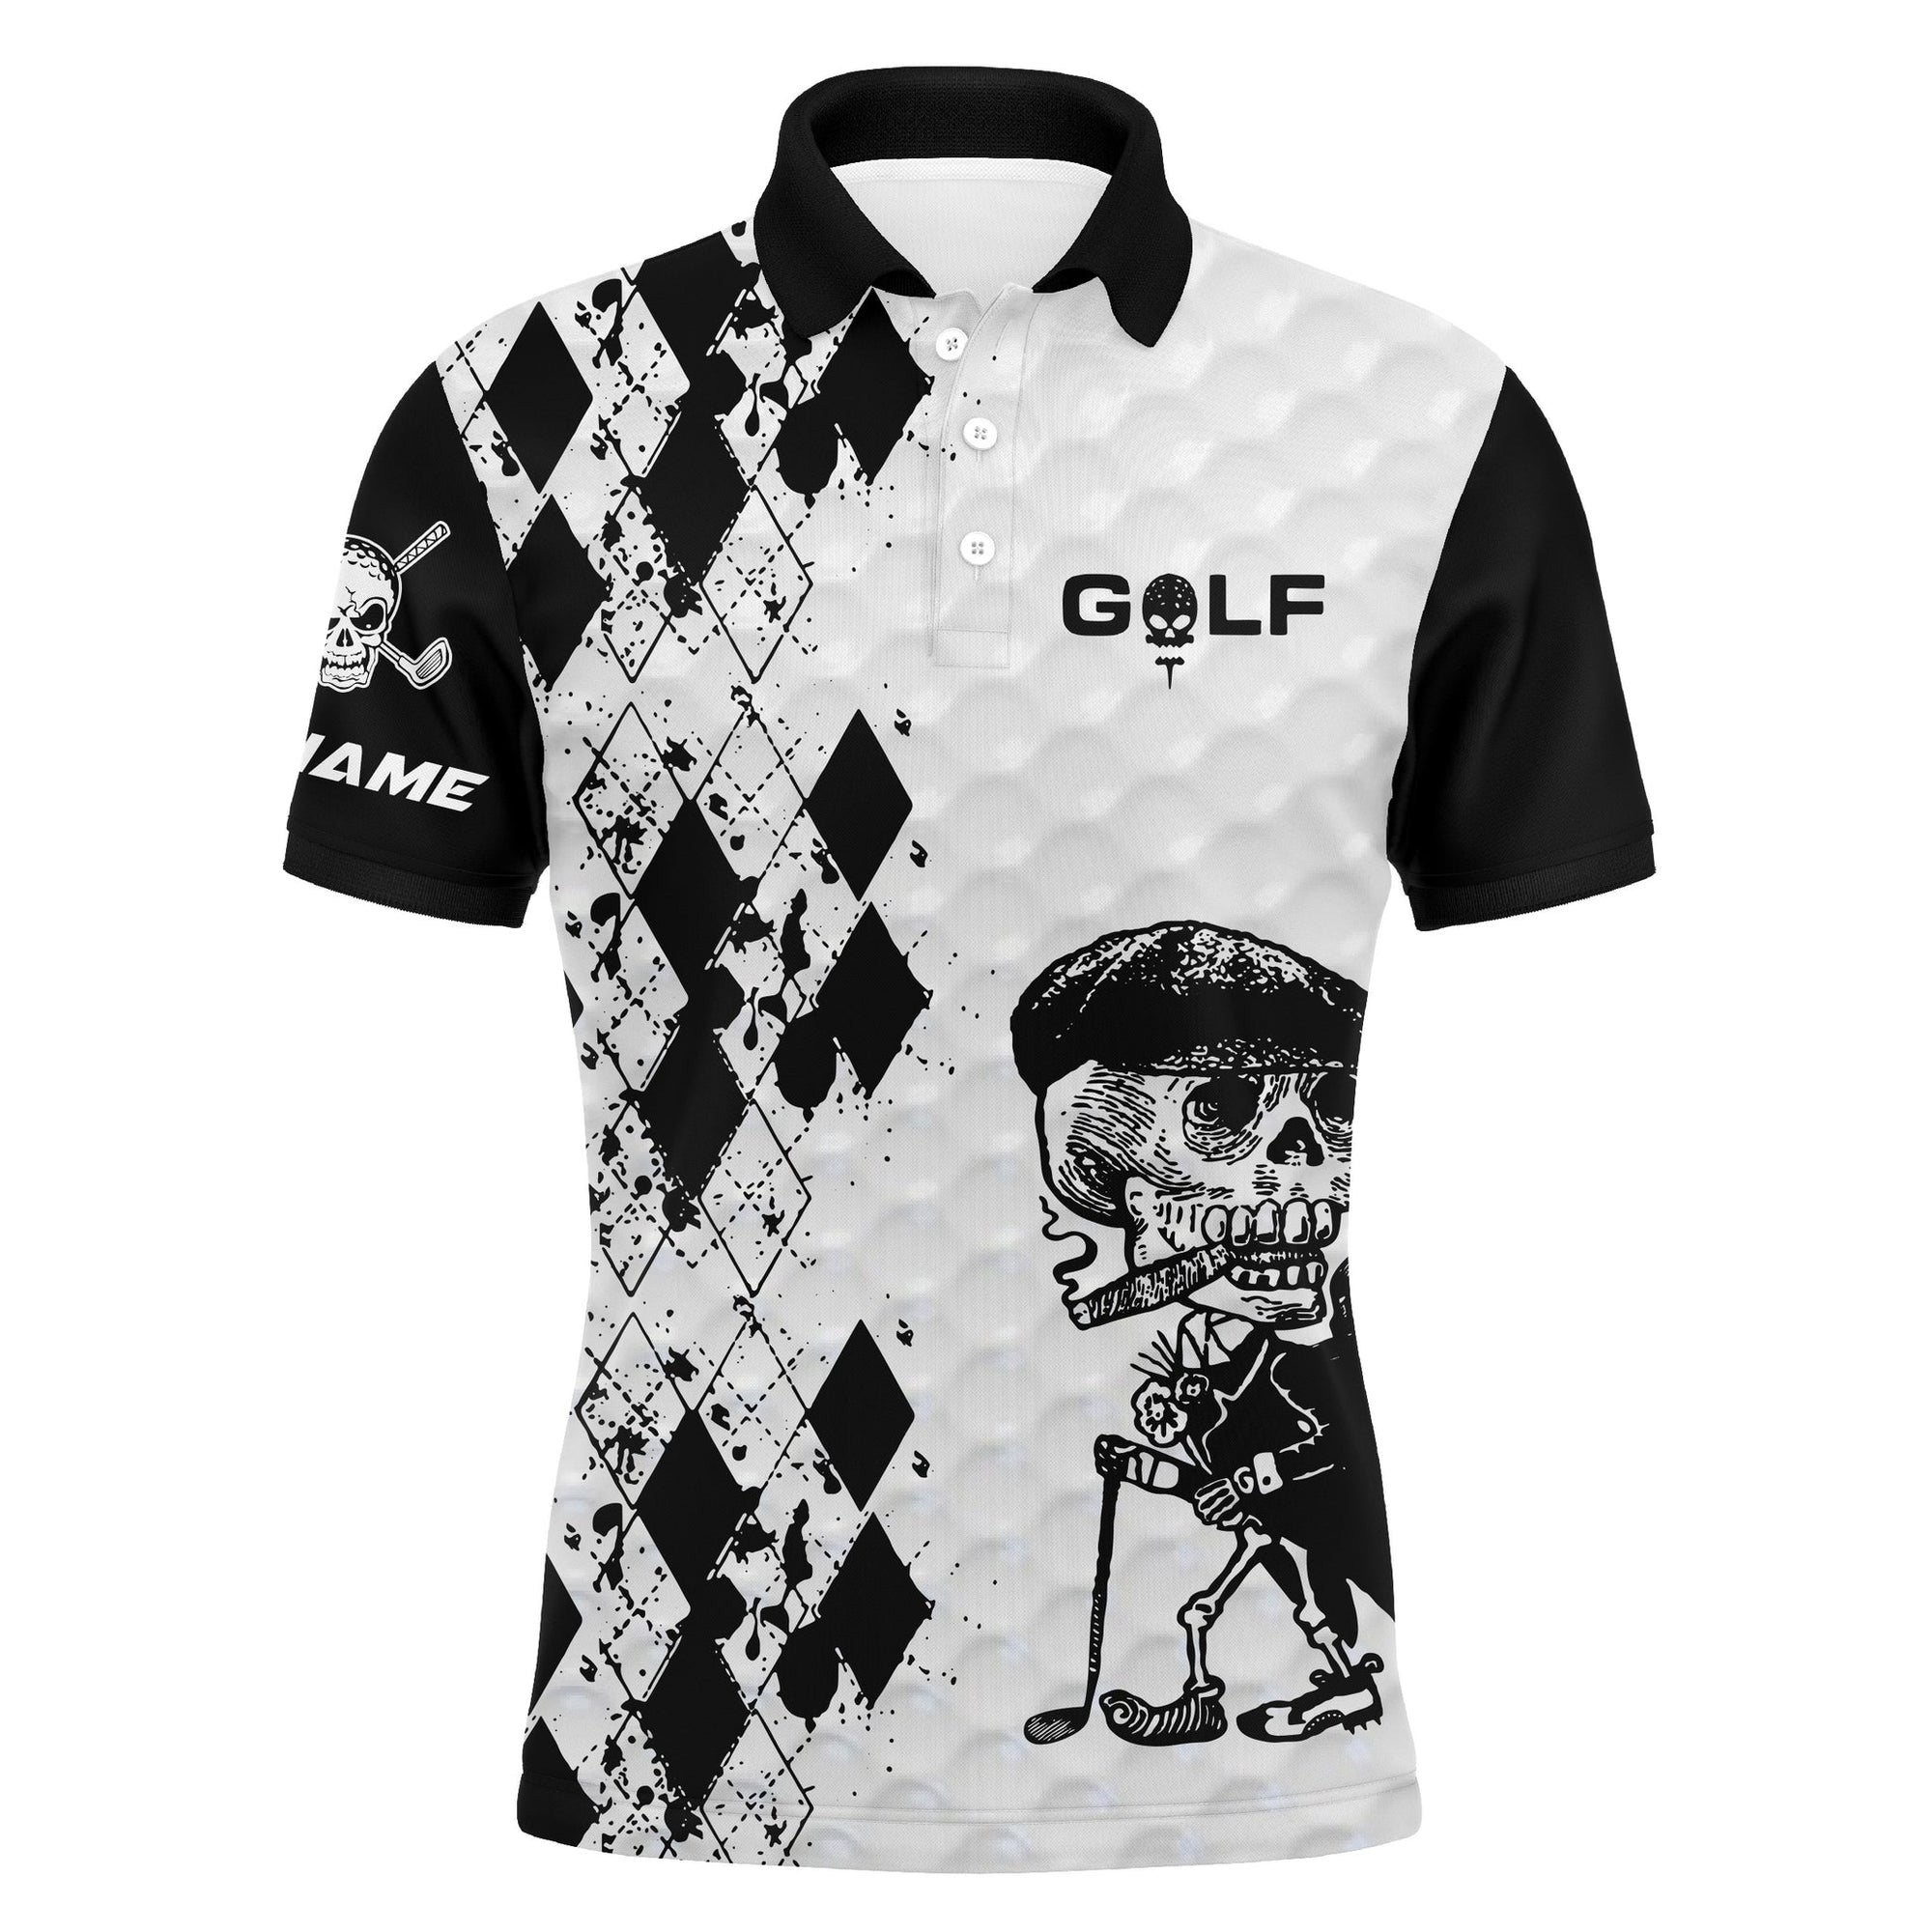 Golf Custom Name Men Polo Shirt - Black & White Argyle Pattern Skull Smoking Apparel - Personalized Best Gift For Golf Lover, Team, Golfer